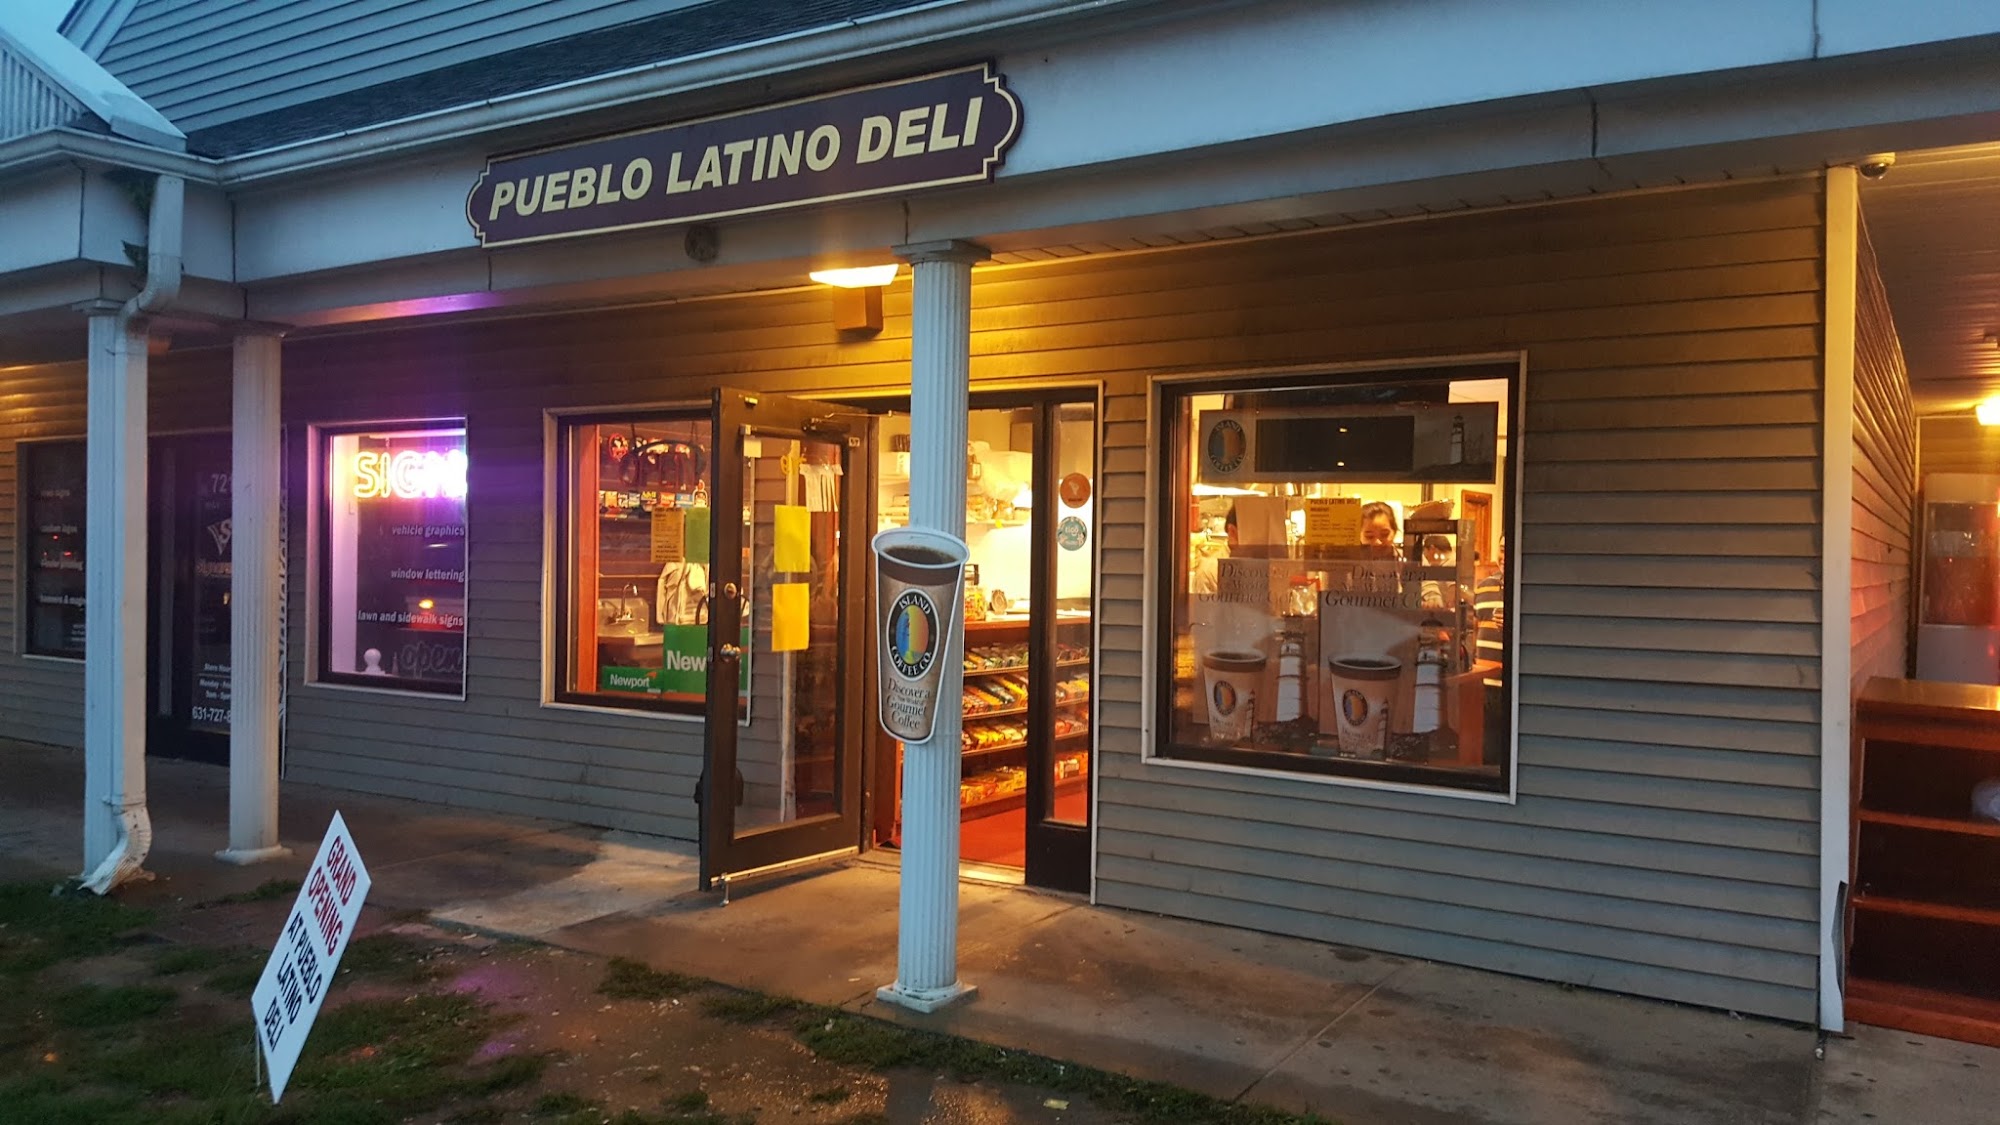 Pueblo Latino Deli